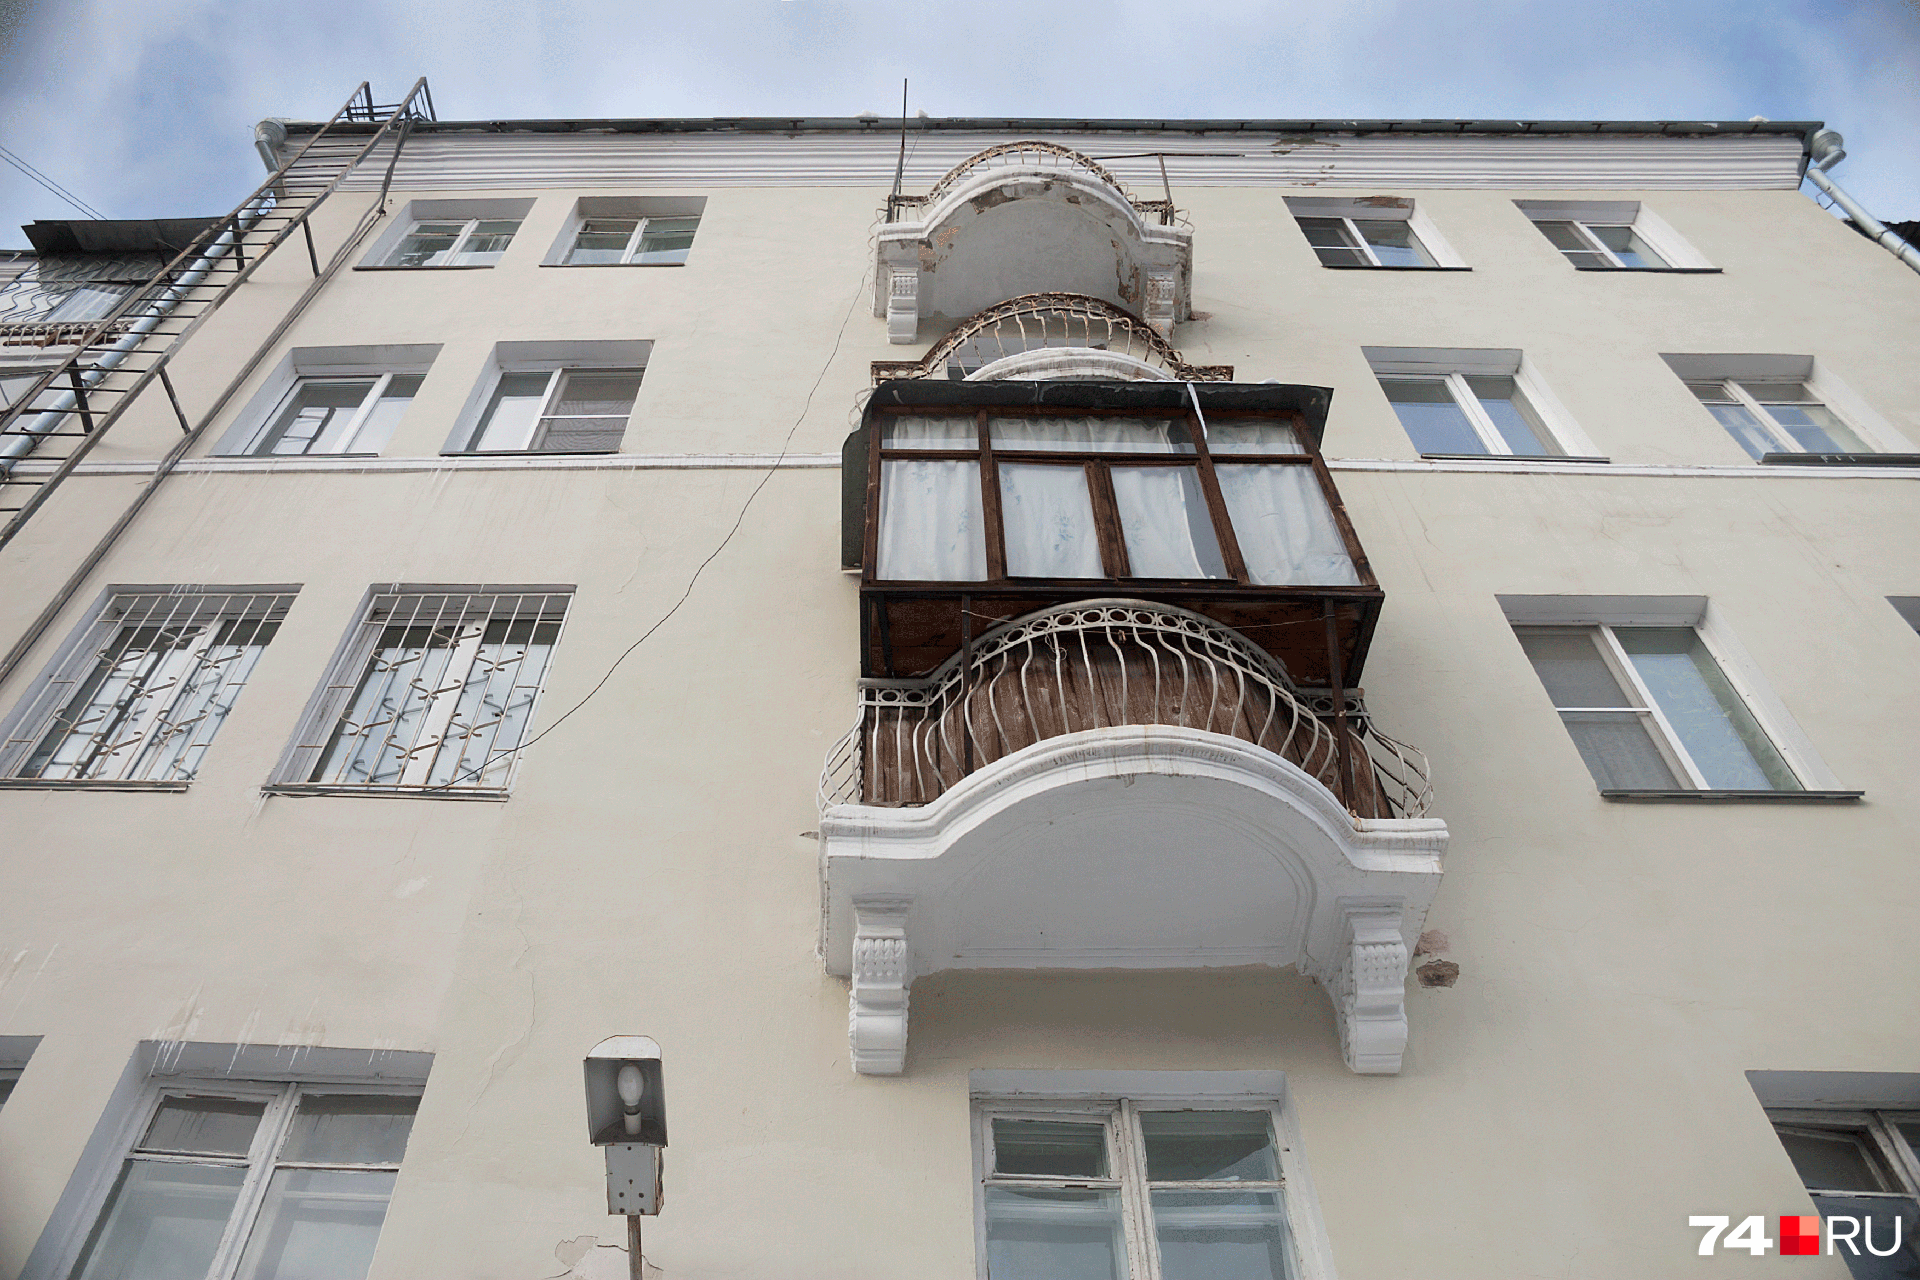 Увеличенные балконы еще и внешний вид фасада портят